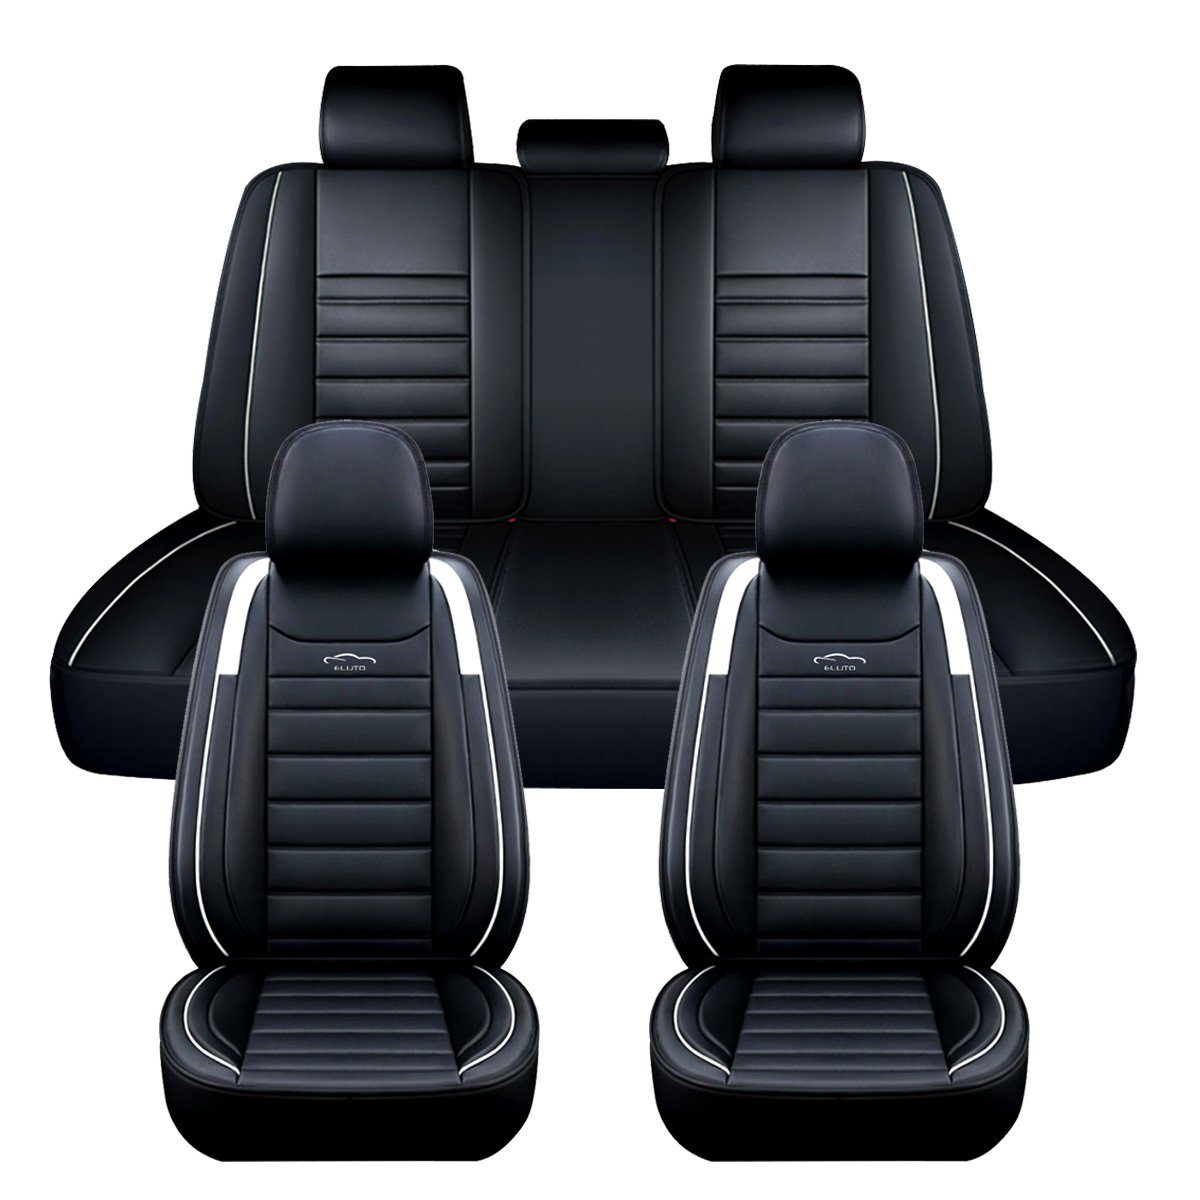 ELUTO Autositzauflage, Universal Luxus 5 Sitz Autositzbezüge Kunstleder Komplettset